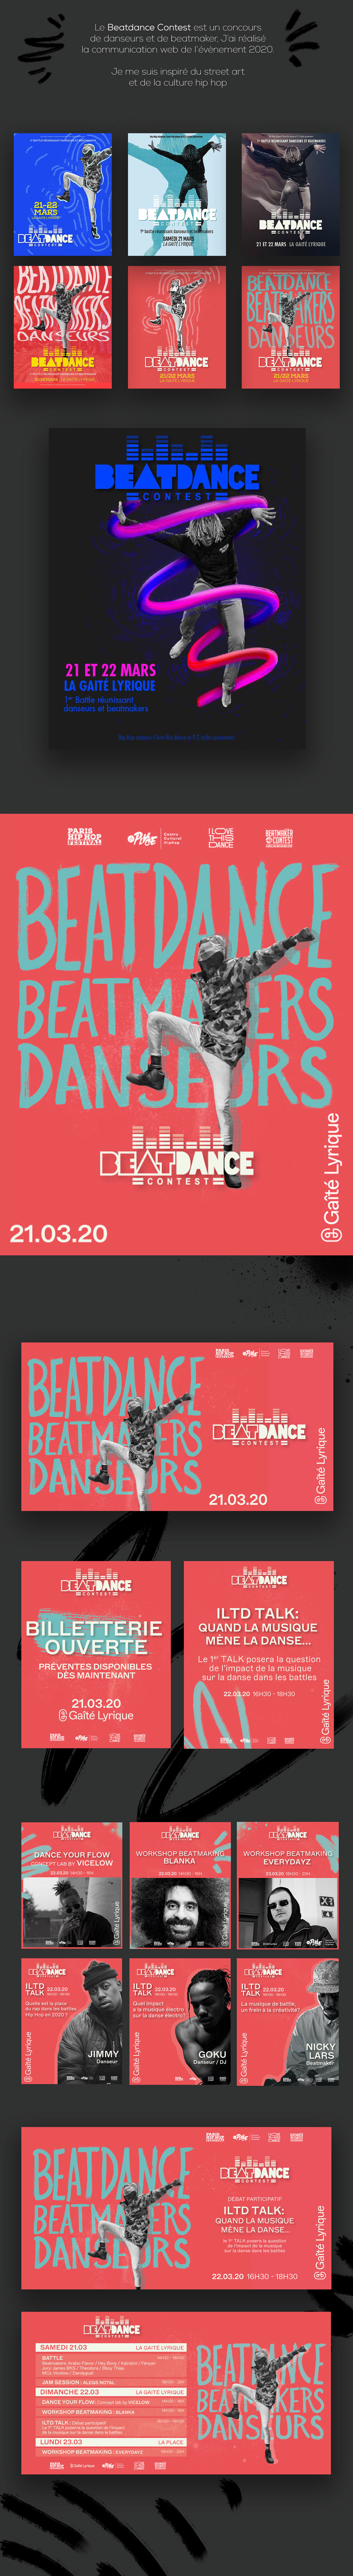 affiche BeatMaker breakdance charte graphique DANCE   danse festival hip-hop PARIS HIP HOP Web